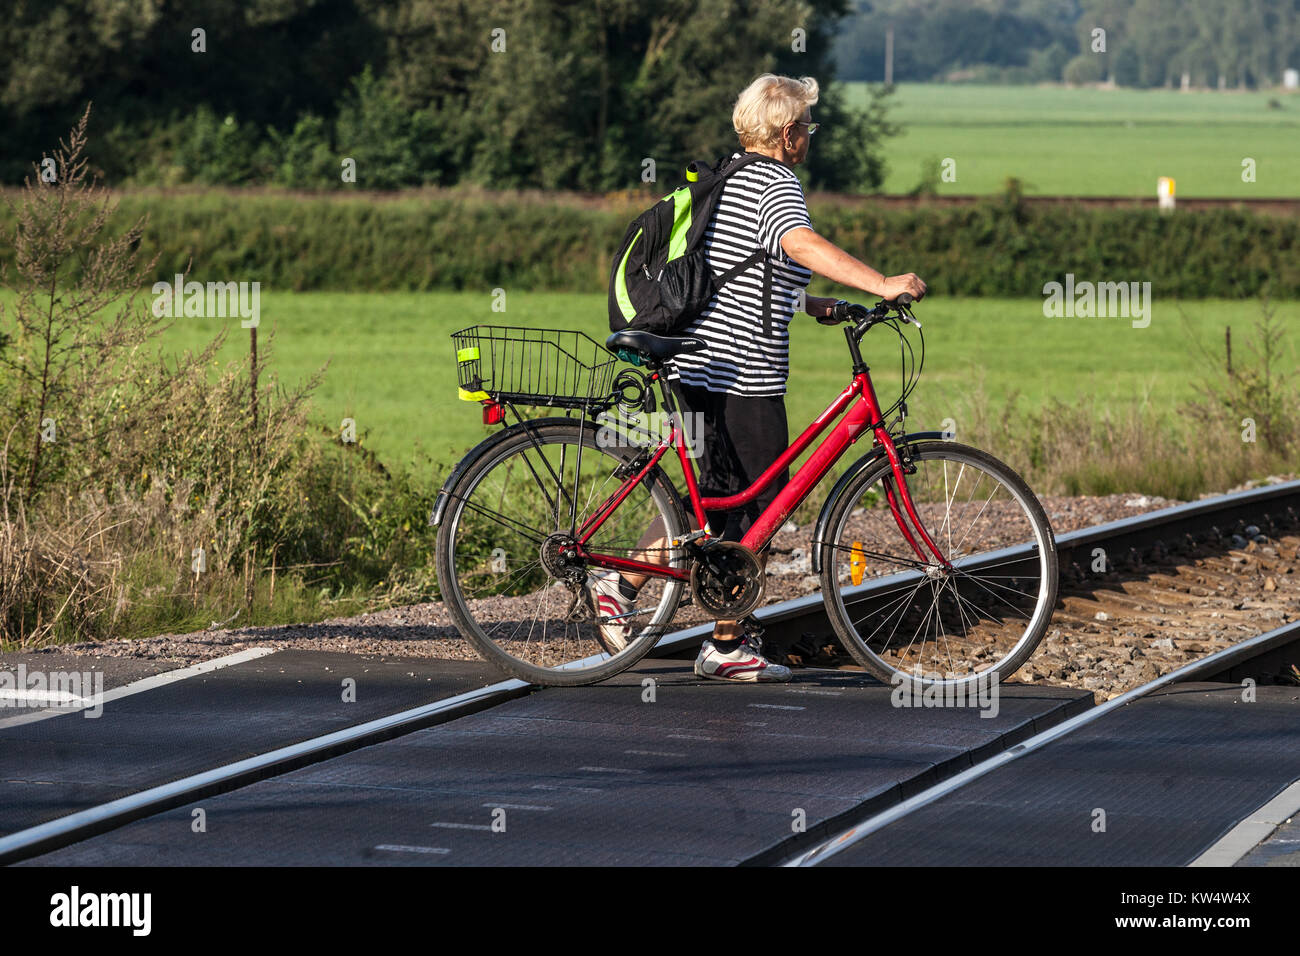 Une femme âgée avec un vélo traverse les voies à un passage à niveau, un cycliste seul, une femme poussant un vélo Banque D'Images